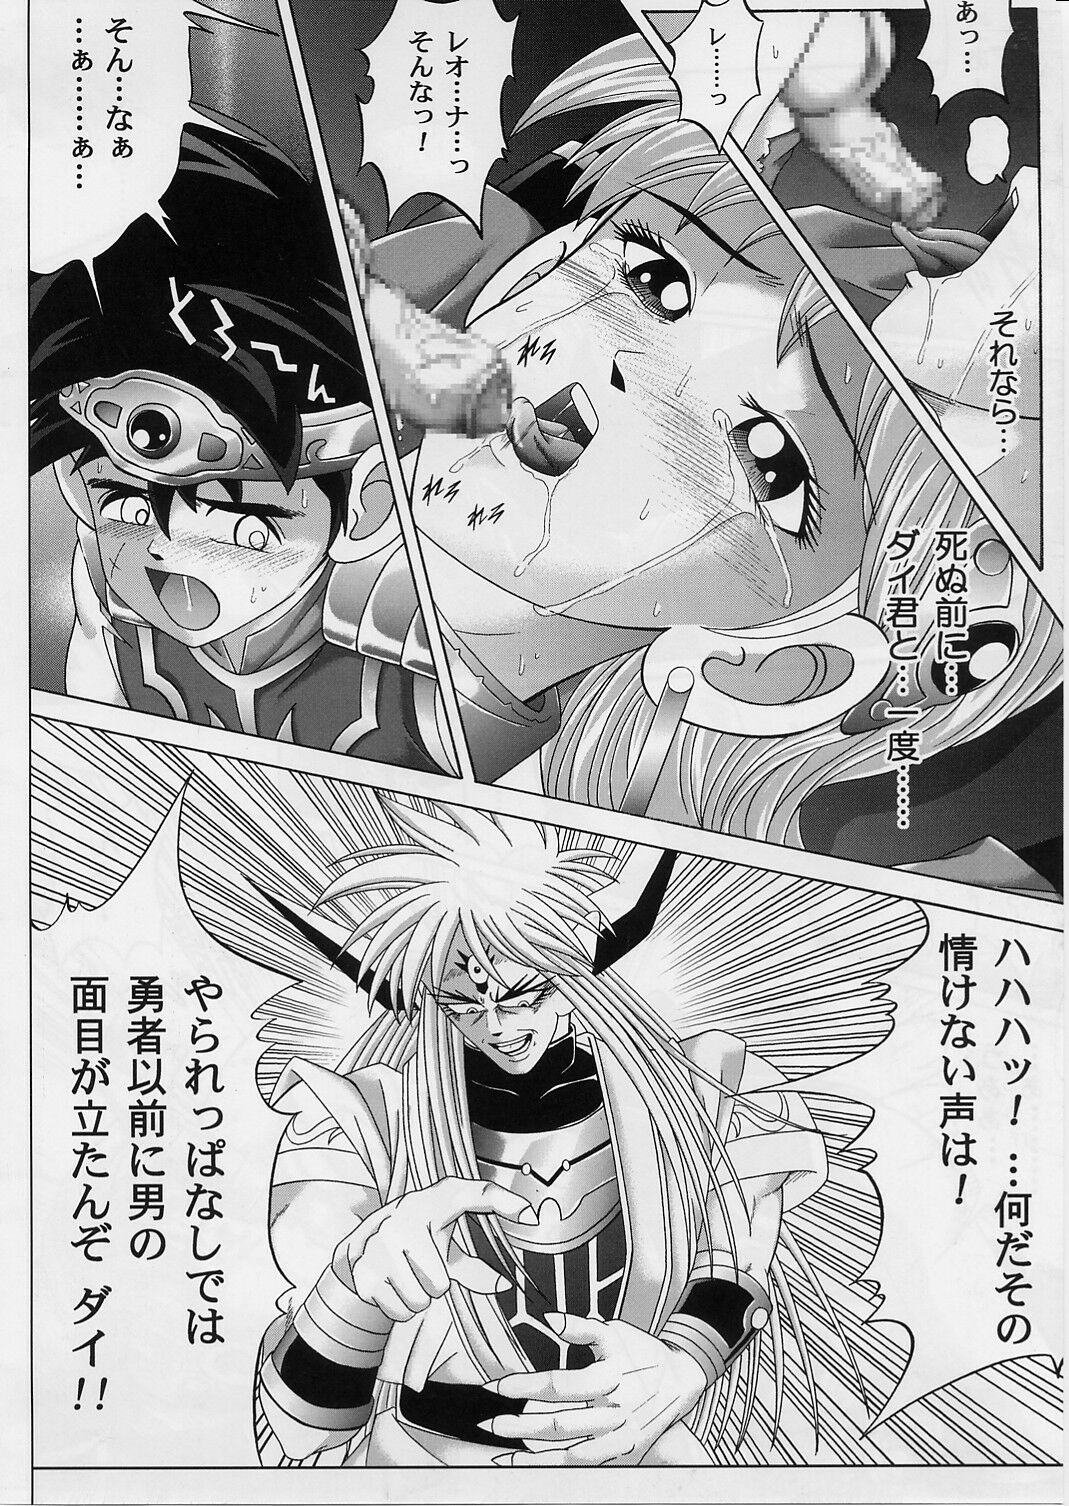 [Cyclone (Izumi, Reizei)] DIME ALLIANCE 2 (Dragon Quest Dai no Daibouken) page 33 full